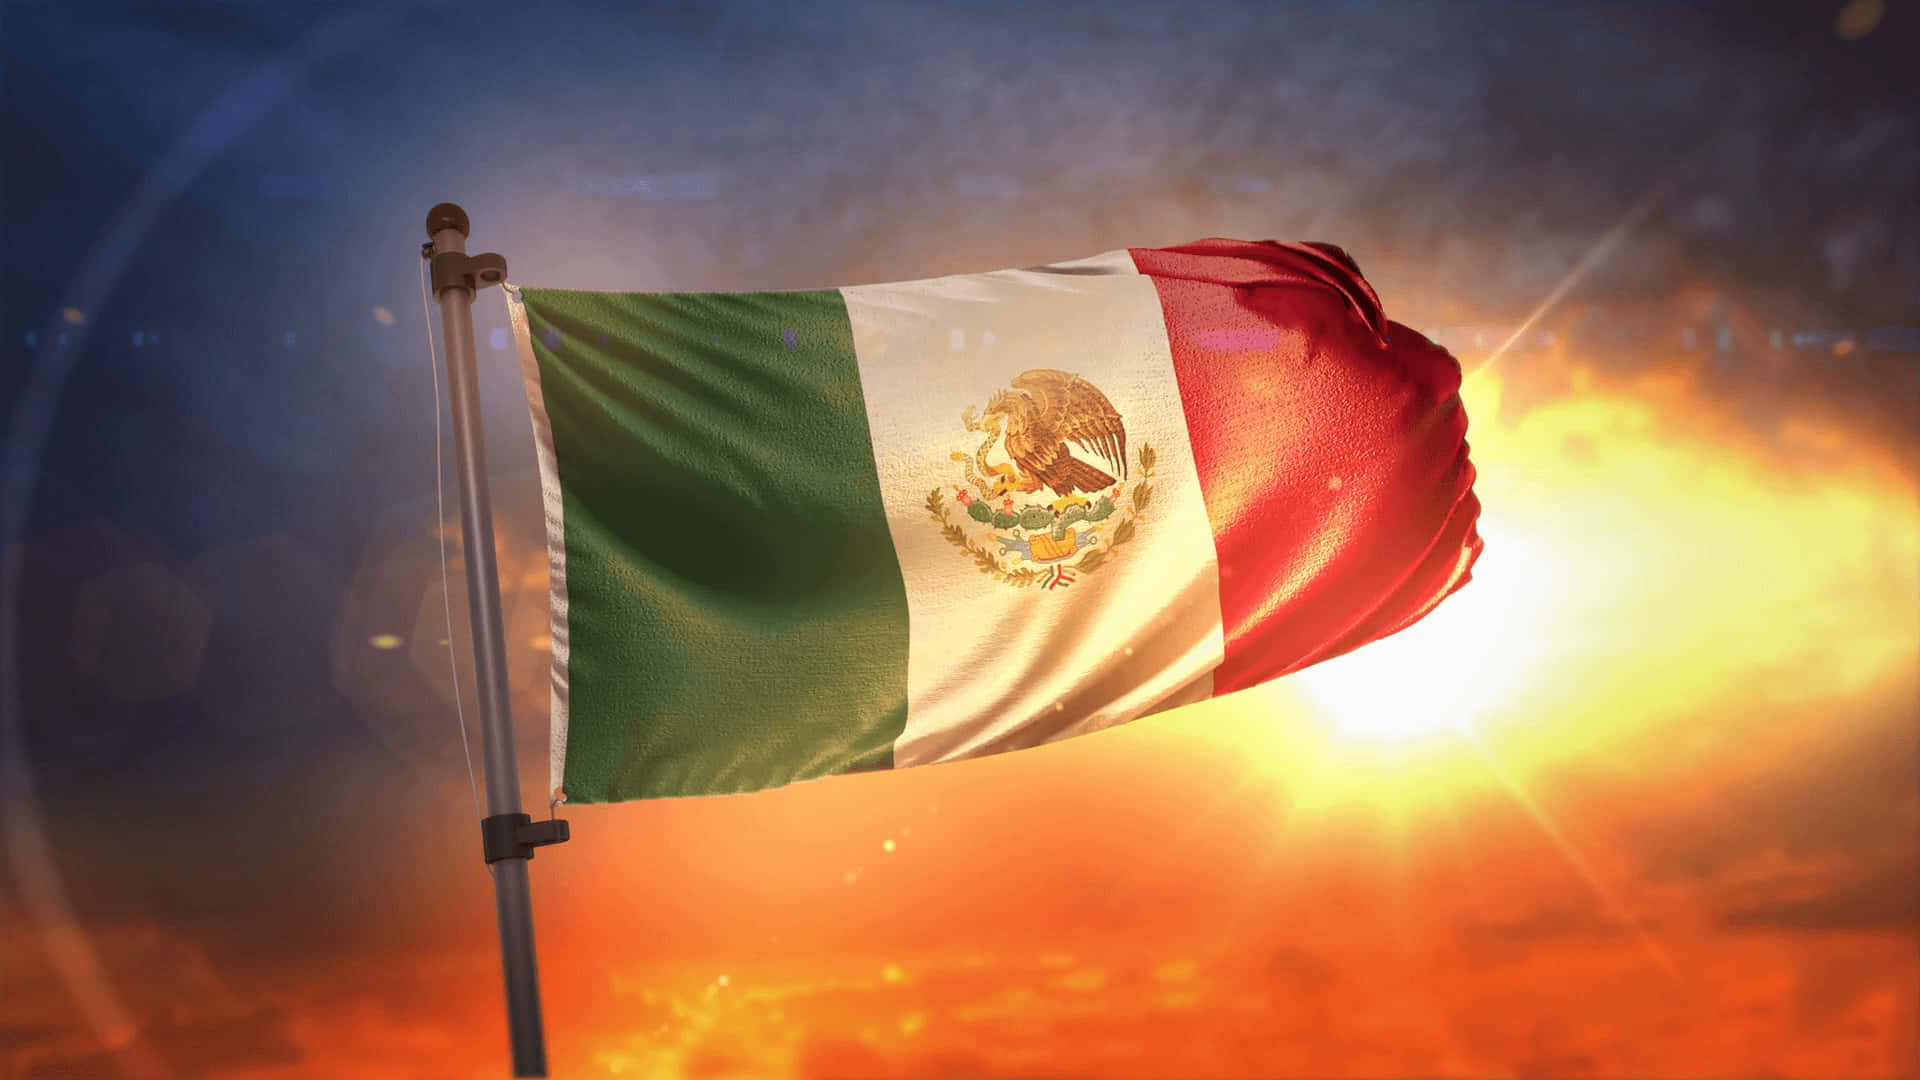 Mexicanskflag Flyver I Vinden Med Ild.